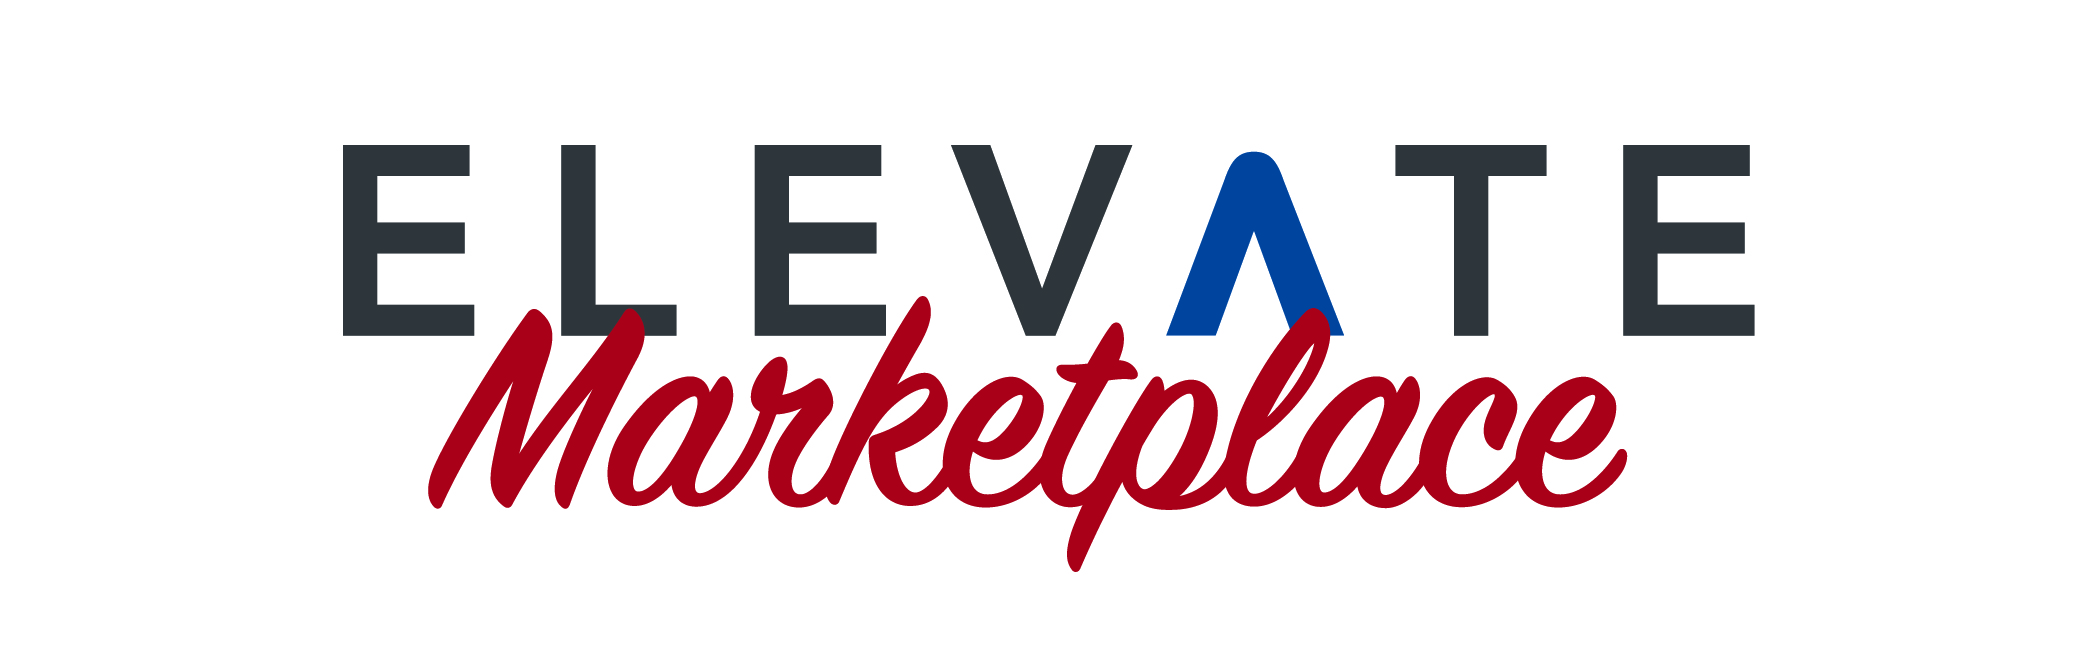 ELEVATE Marketplace Logo